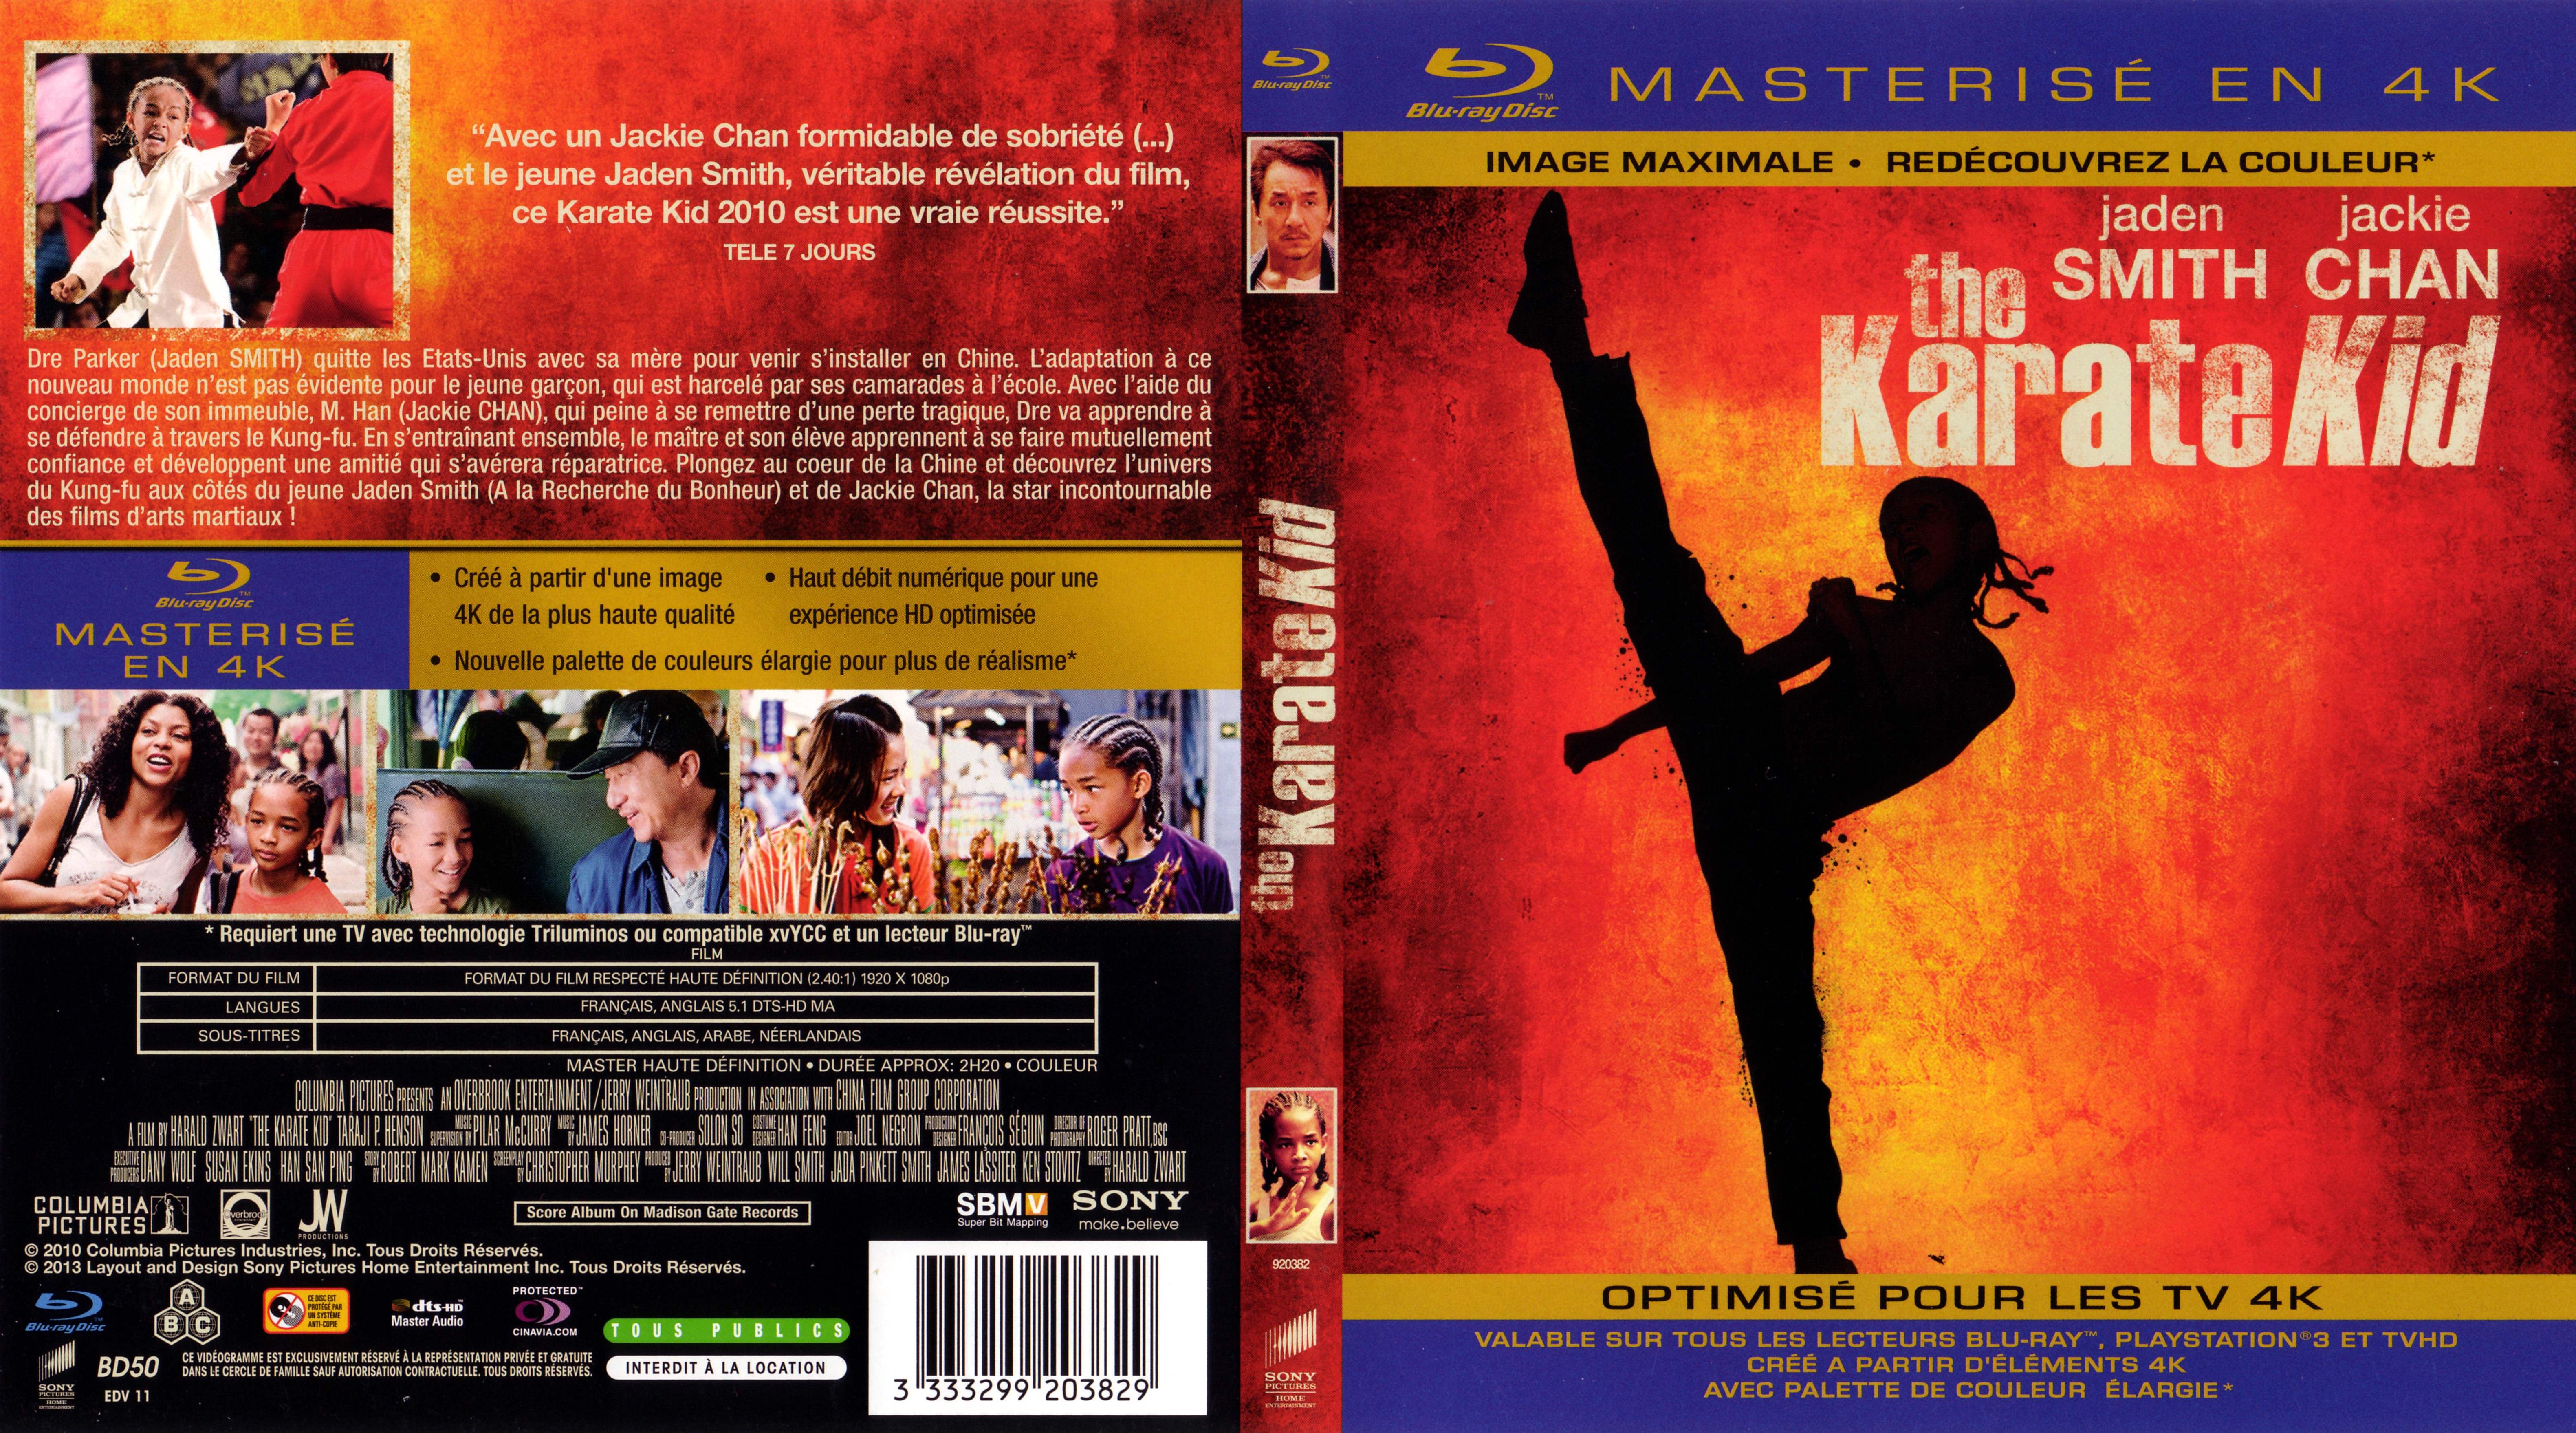 Jaquette DVD The Karat Kid (2010) 4K (BLU-RAY)